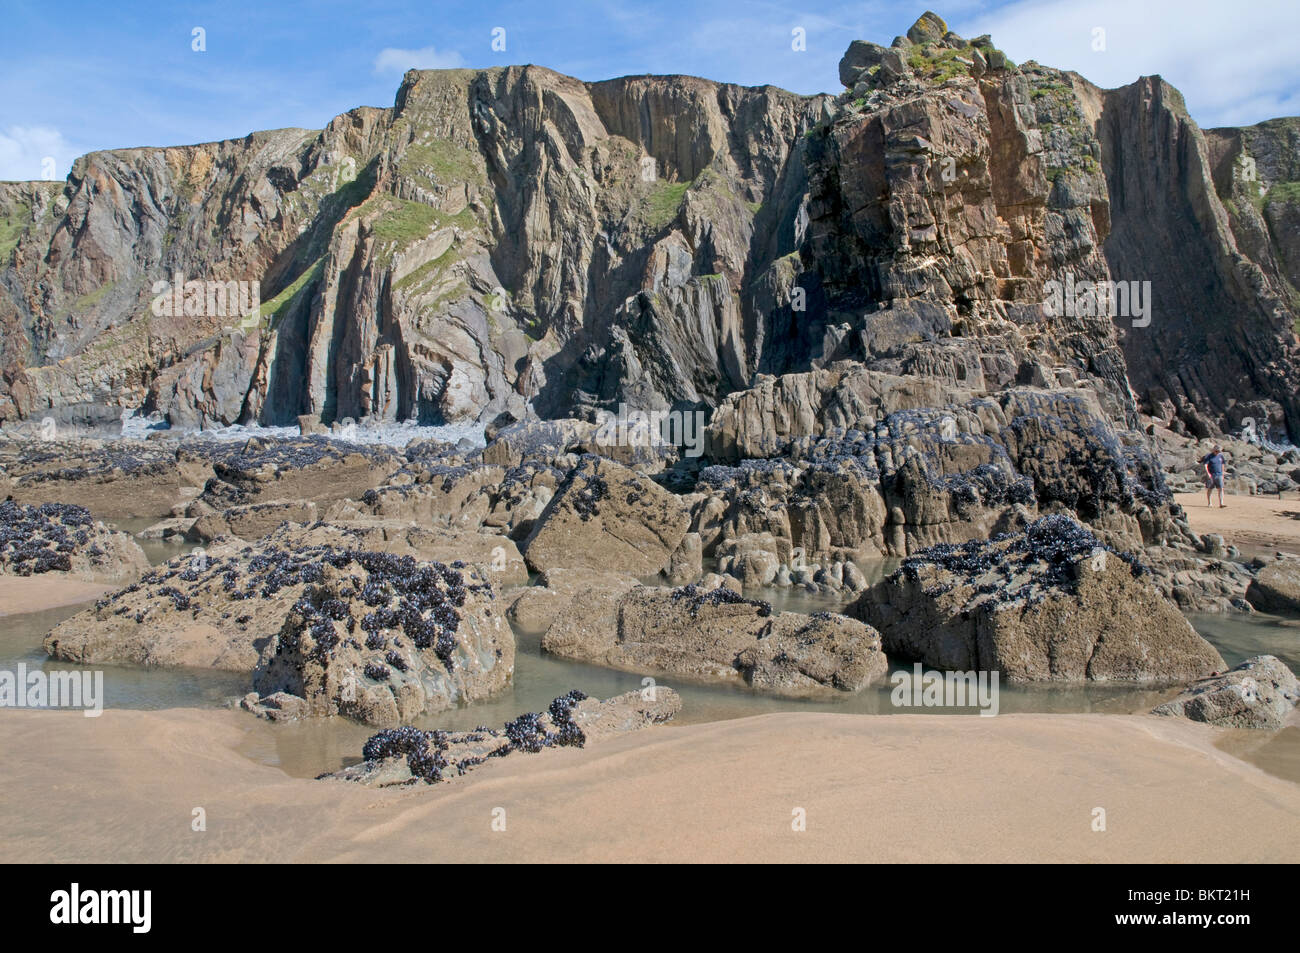 Particolarmente attraente tratto del North Cornwall costa al Sandy Mouth Beach, appena a nord di Bude Foto Stock